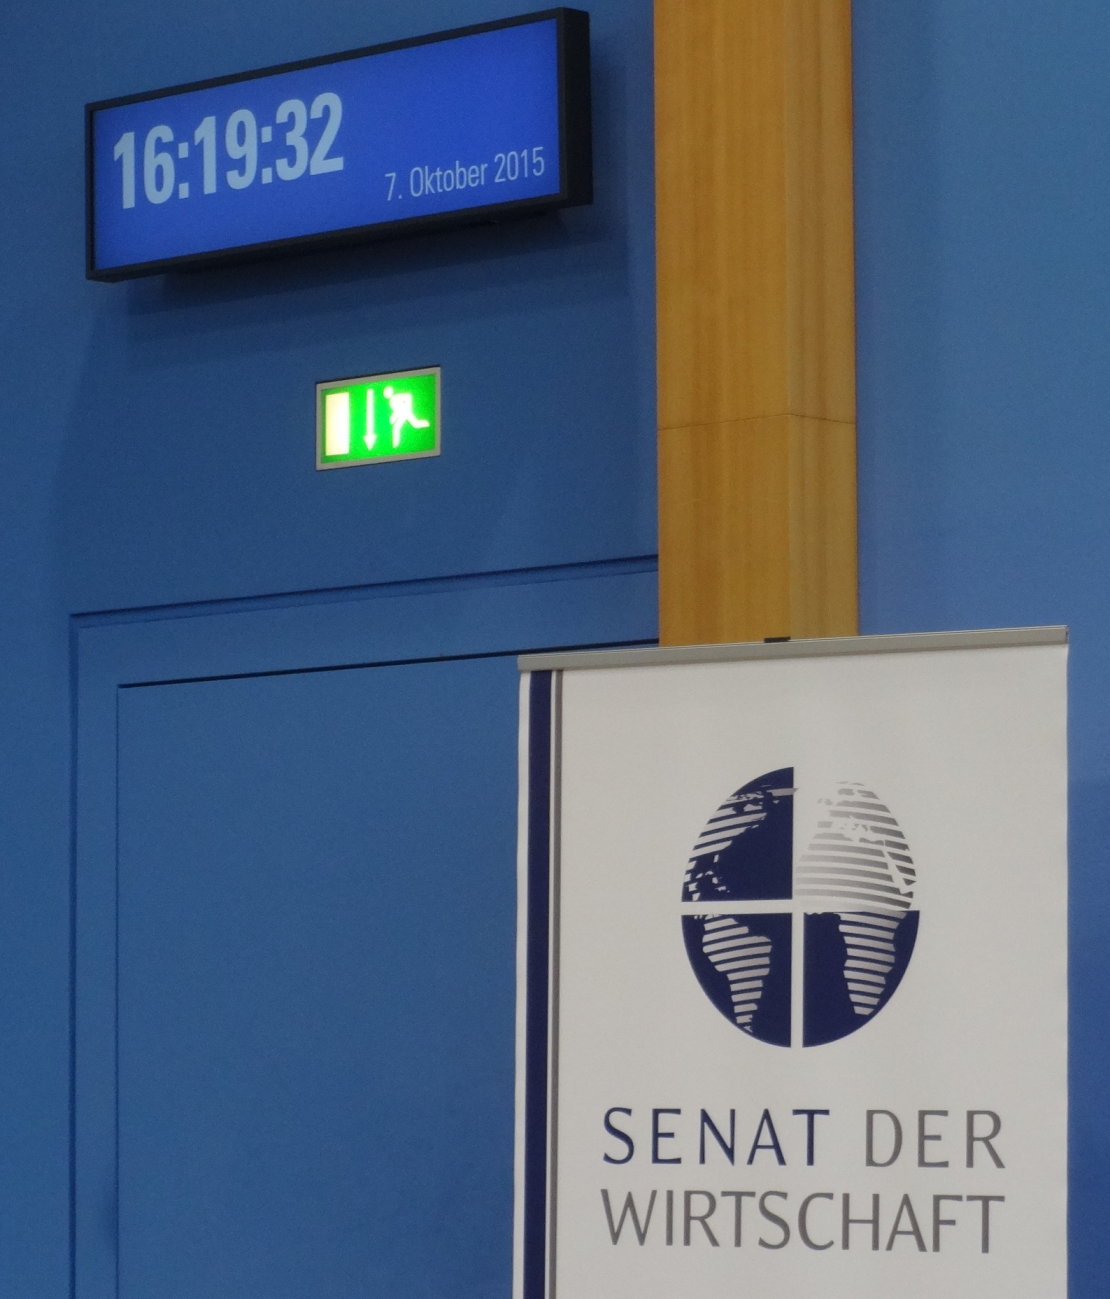 Senate of Economy Europe Senat der Wirtschaft